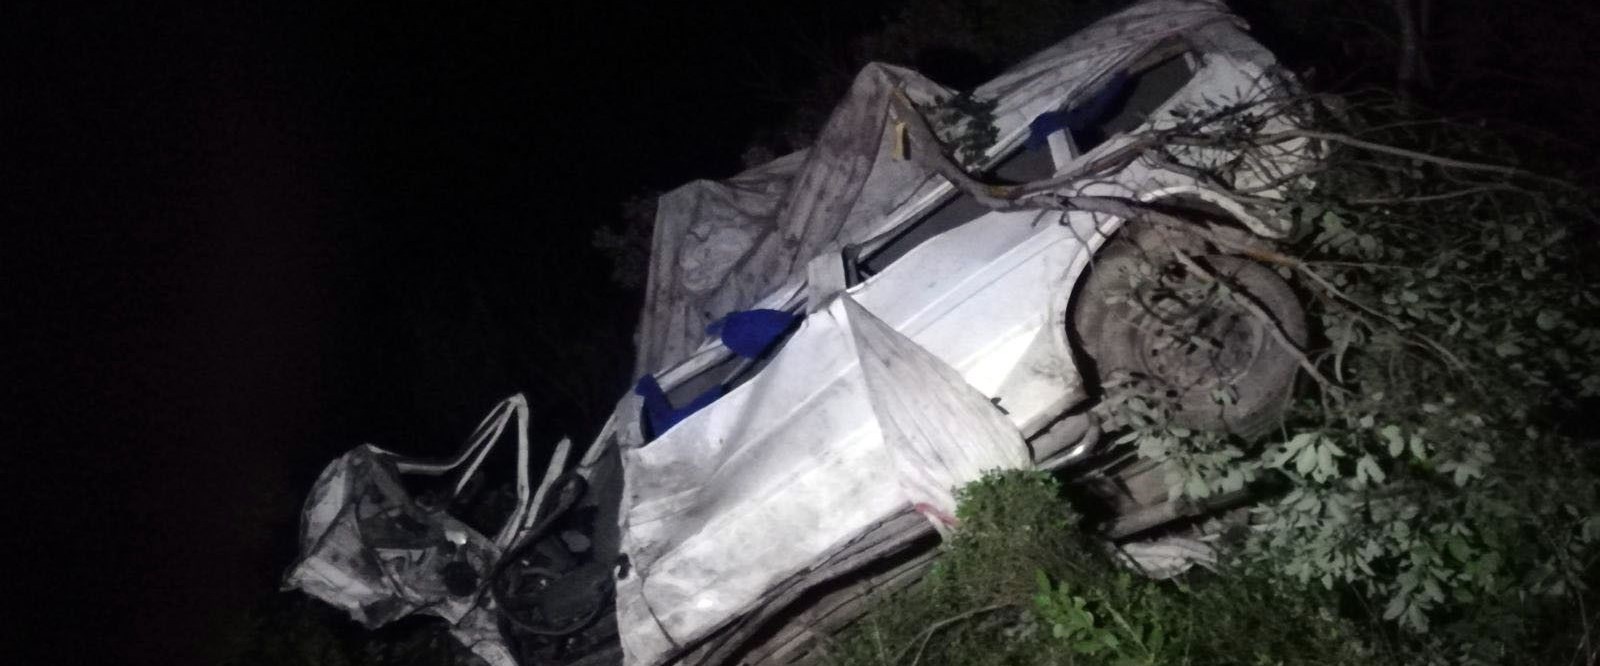 Aydın’da trafik kazası: 3 ölü, 3 yaralı